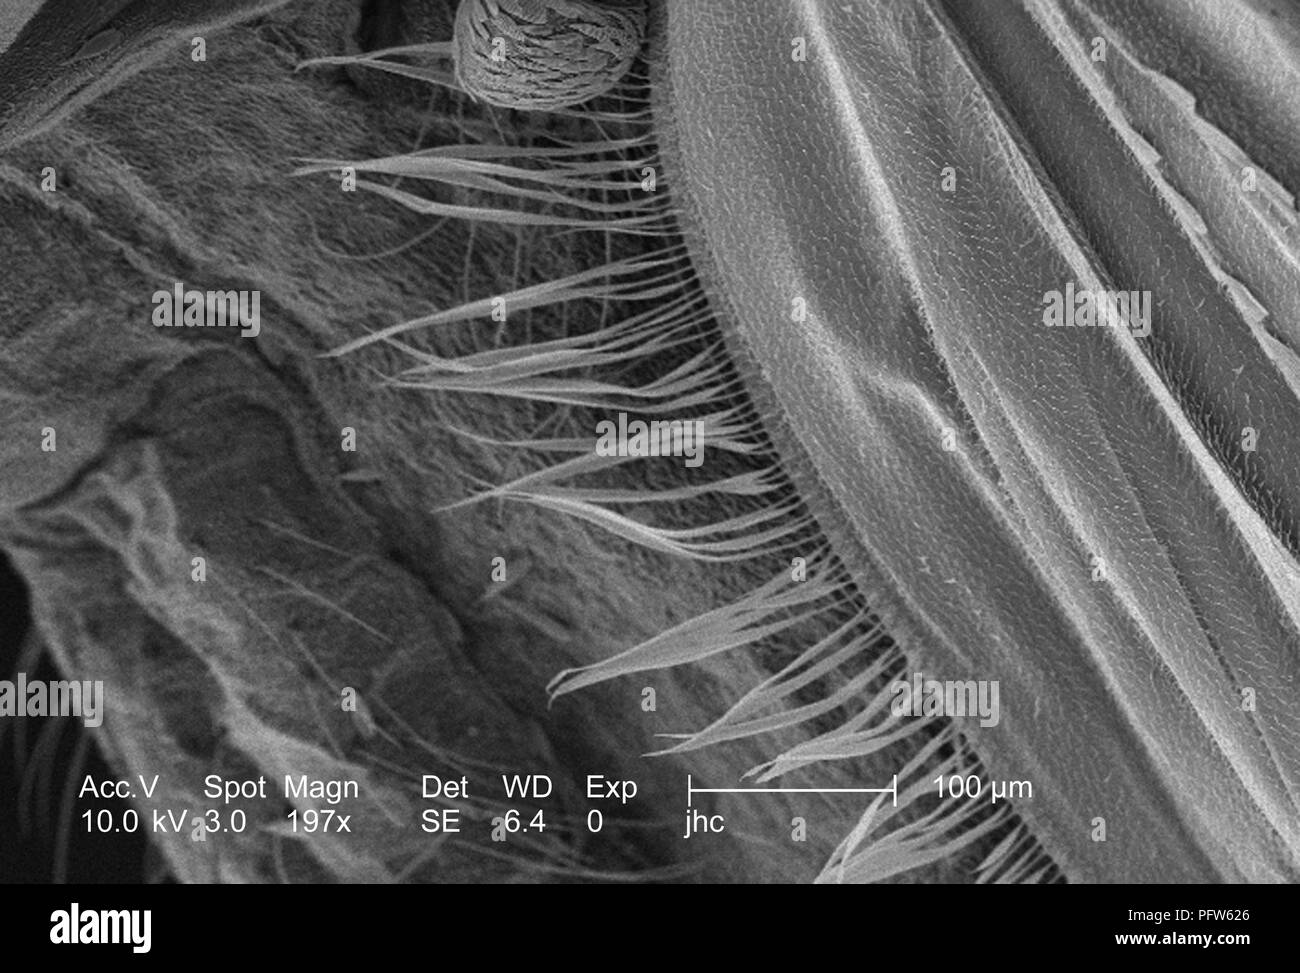 Caratteristiche morfologiche di un Anopheles gambiae zanzare ala, ha rivelato nel 197x di scansione ingrandita al microscopio elettronico (SEM) immagine, 2006. Immagine cortesia di centri per il controllo delle malattie (CDC) / Dr Paolo Howell. () Foto Stock